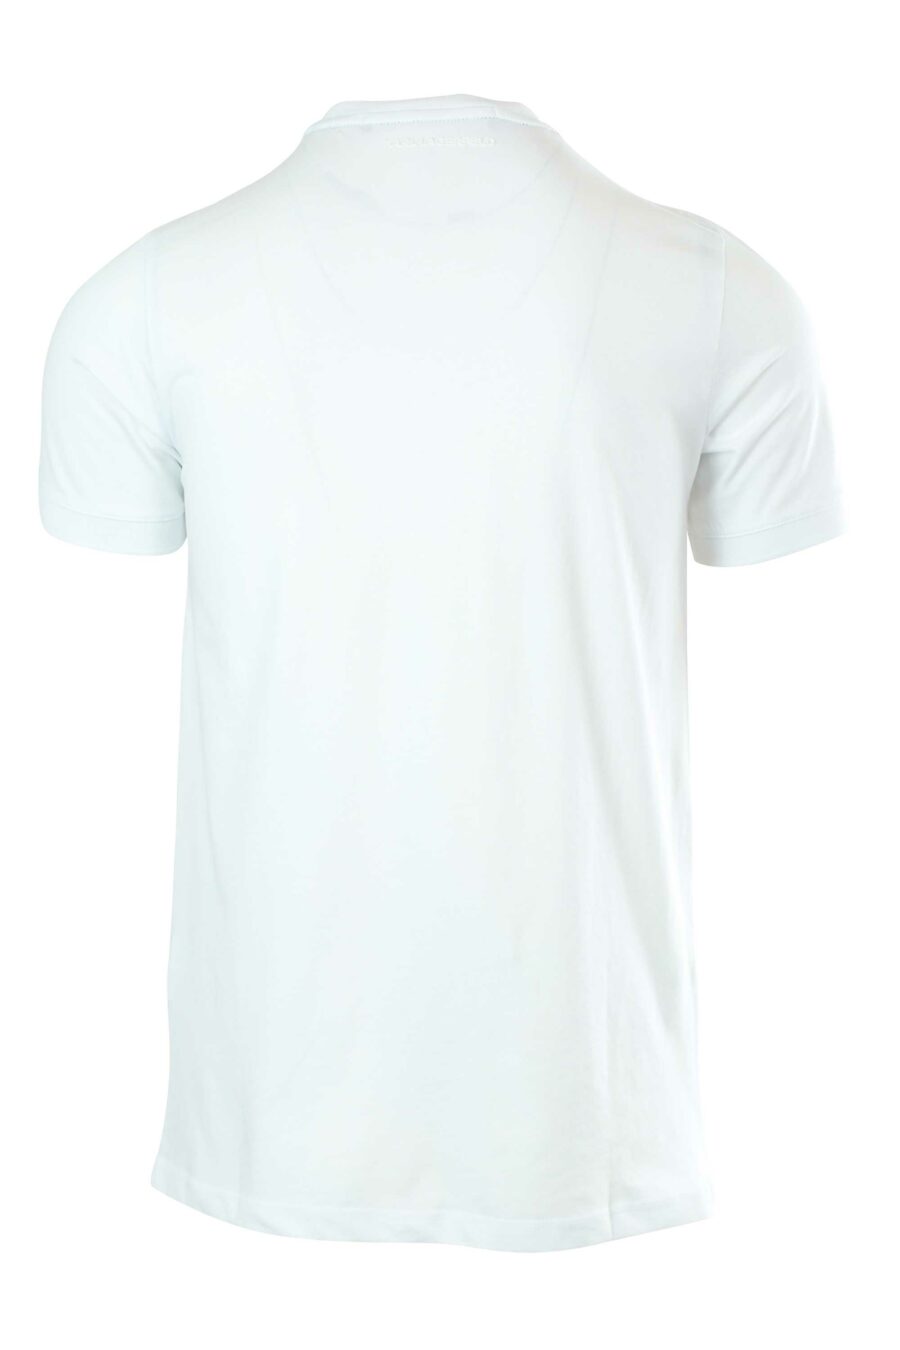 T-shirt branca com pequeno logótipo preto - 4062226282444 2